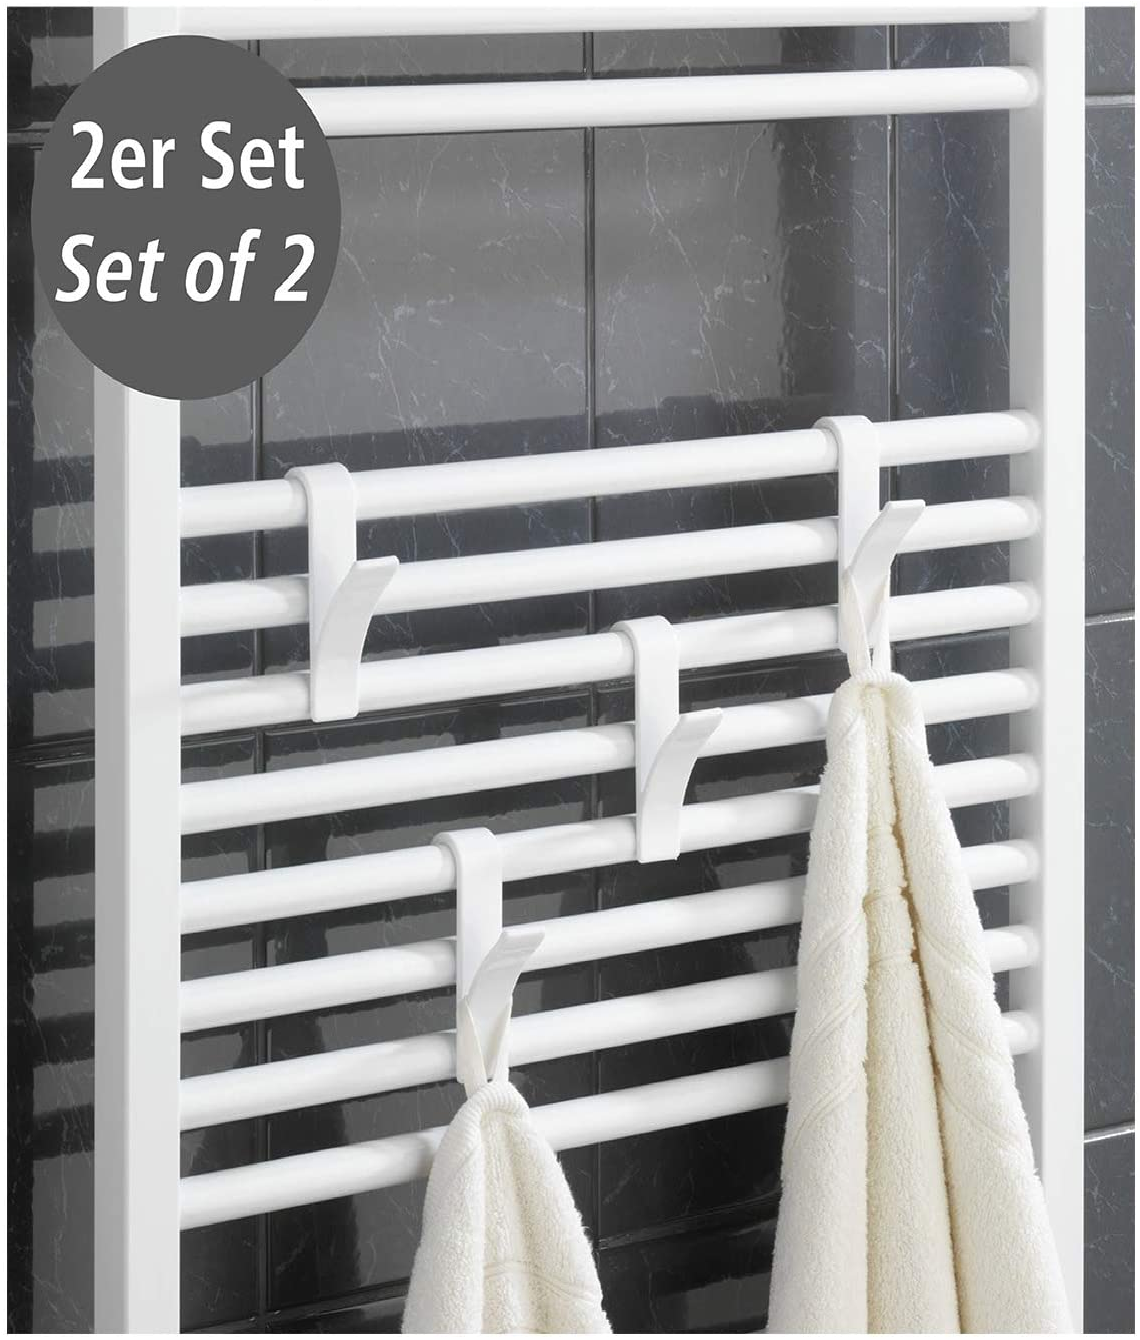 Haken für Handtuchheizkörper Weiß 2er Set - Heizkörperhaken, 2er Set, Kunststoff, 2.5 x 10.5 x 7 cm, Weiß